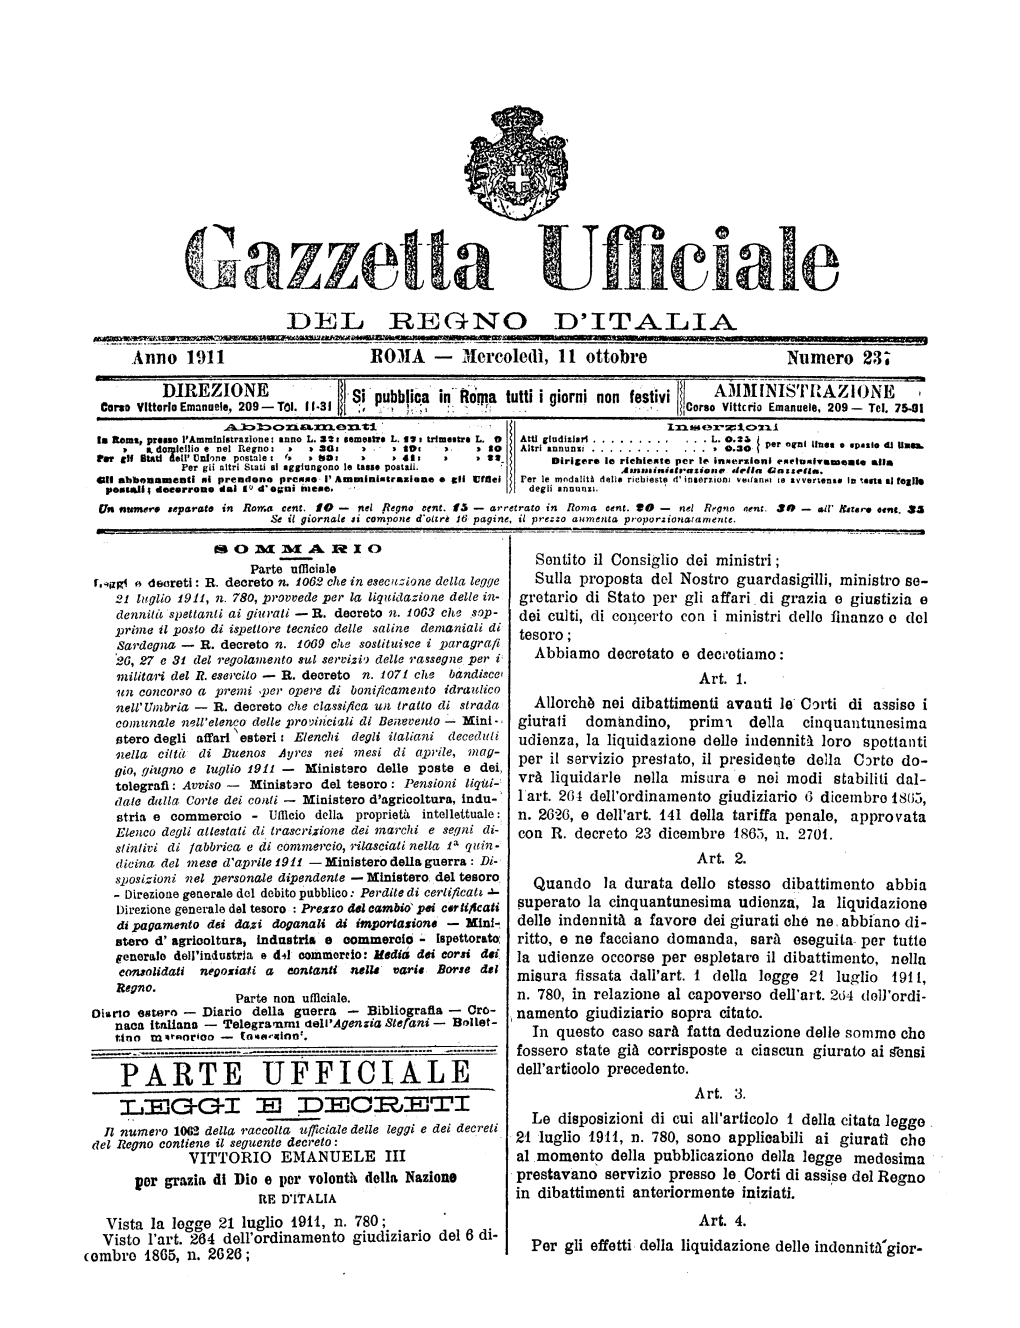 Gazzetta Ufficiale Del Regno D'italia N. 237 Del 11 Ottobre 1911 Parte